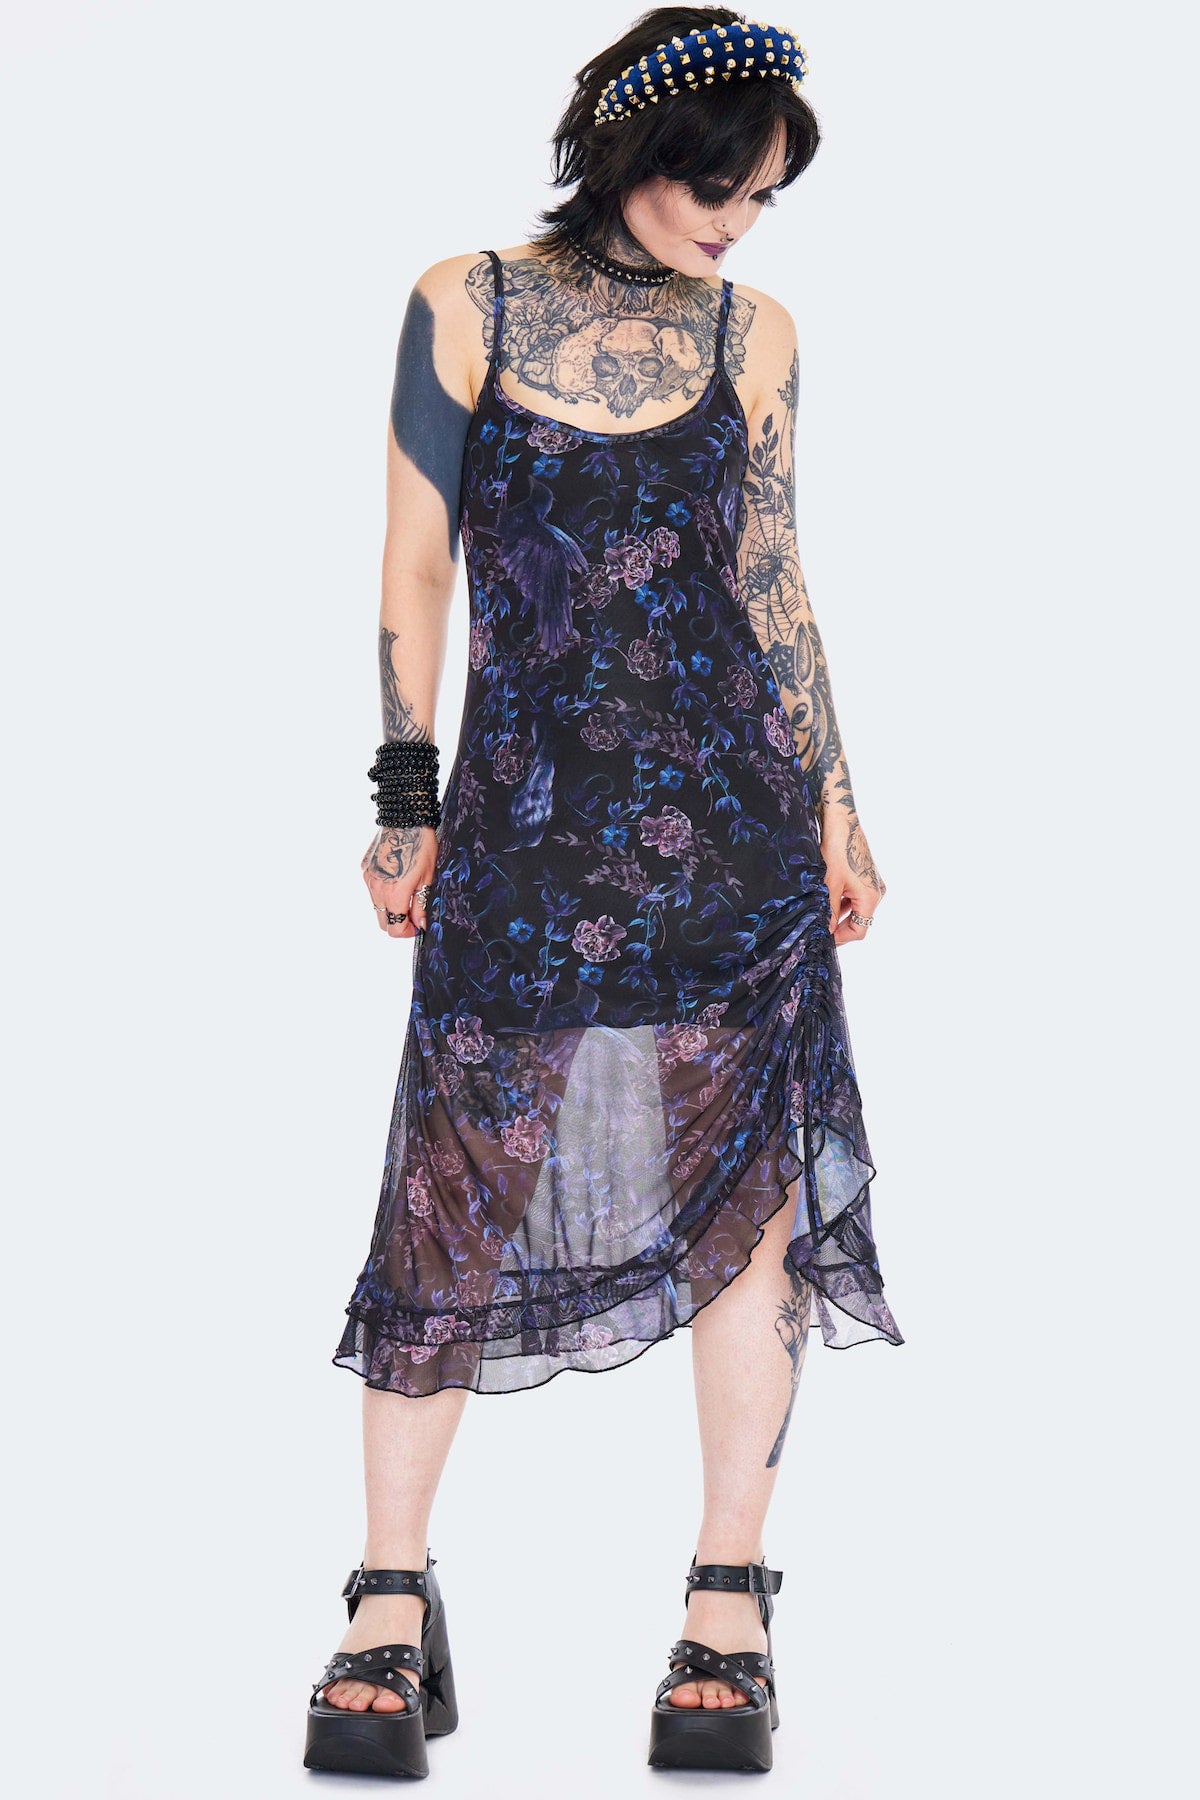 Jawbreaker Wiggle Dress in Lilac  Retro Style Dress – Vixen by